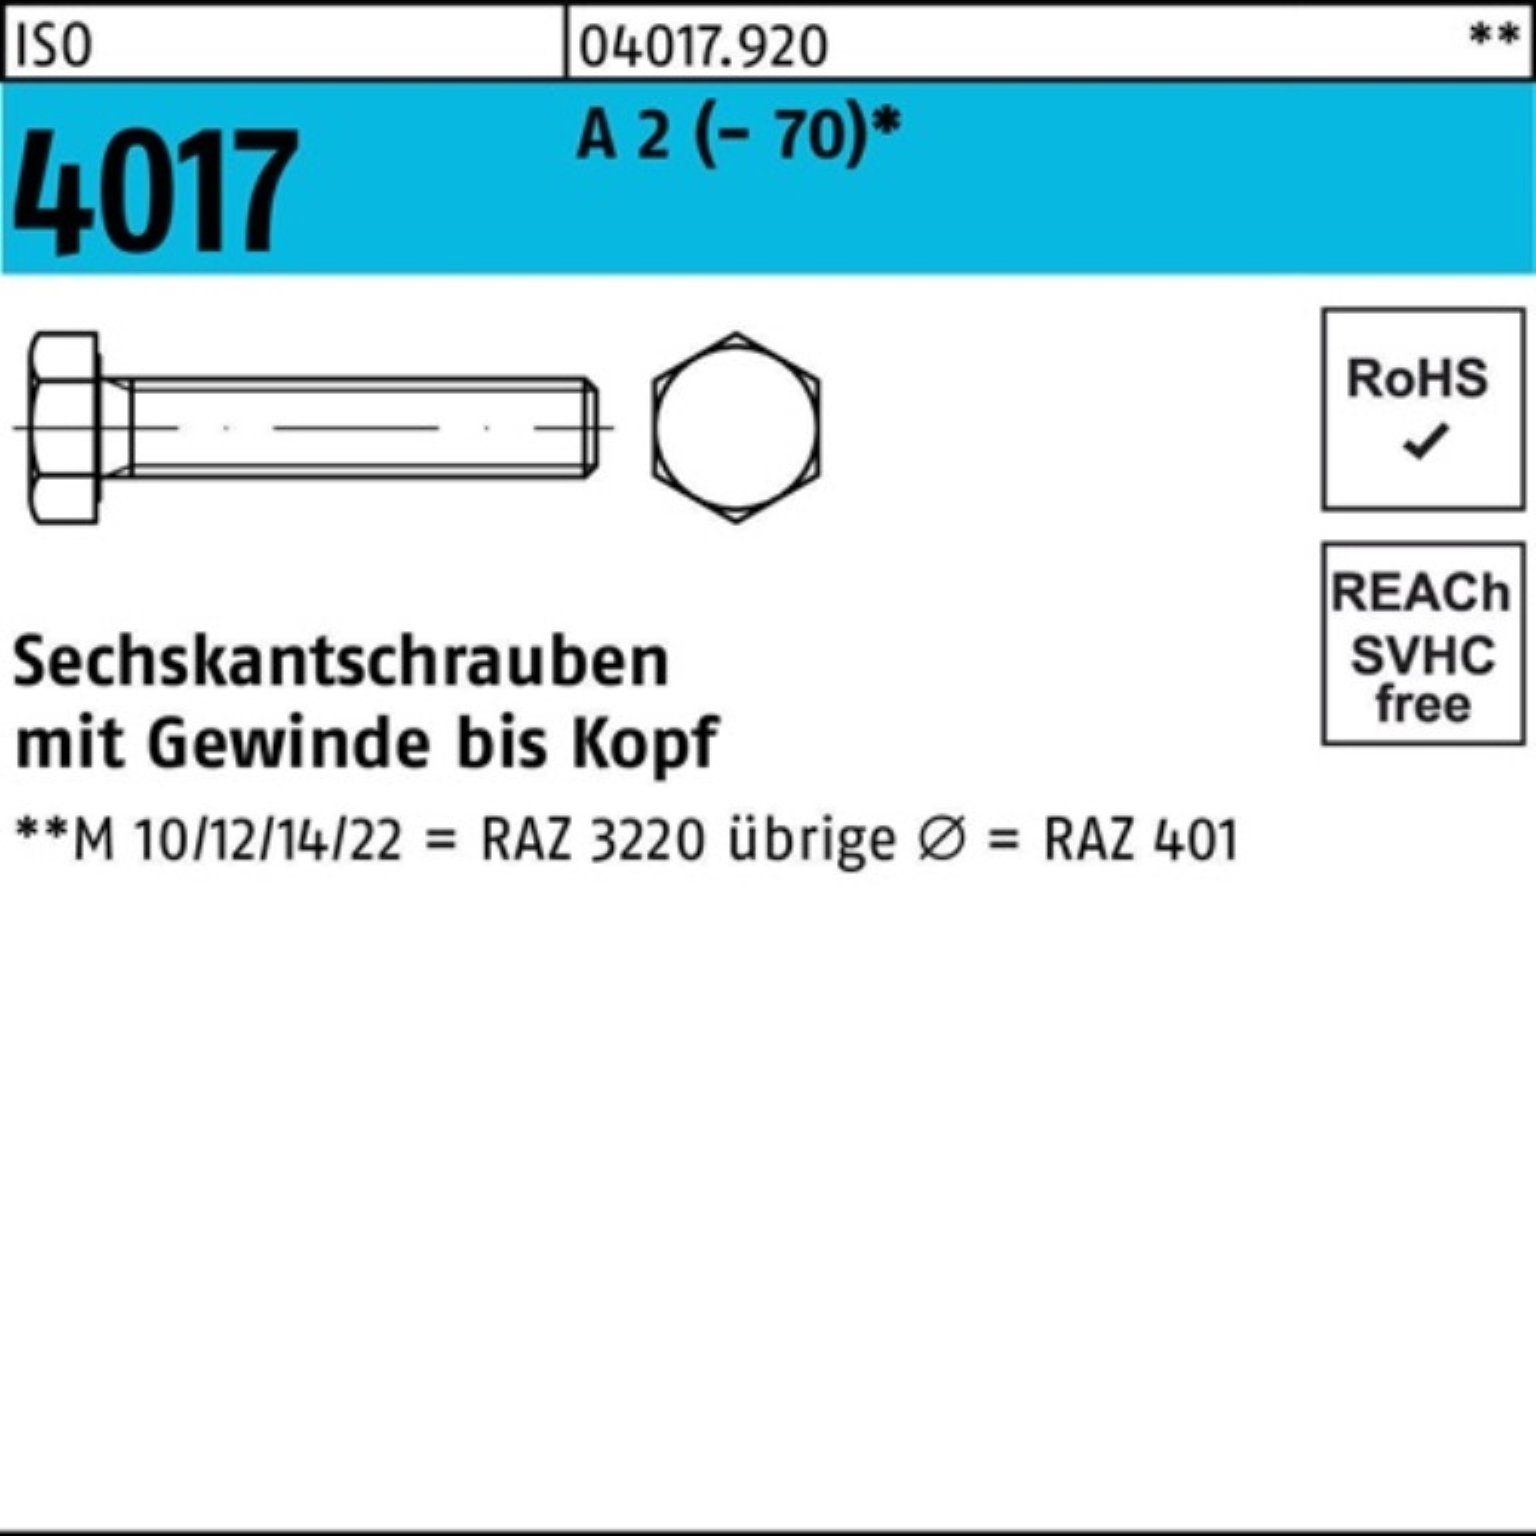 Bufab Sechskantschraube 100er Pack Sechskantschraube ISO 4017 VG M14x 65 A 2 (70) 50 Stück | Schrauben